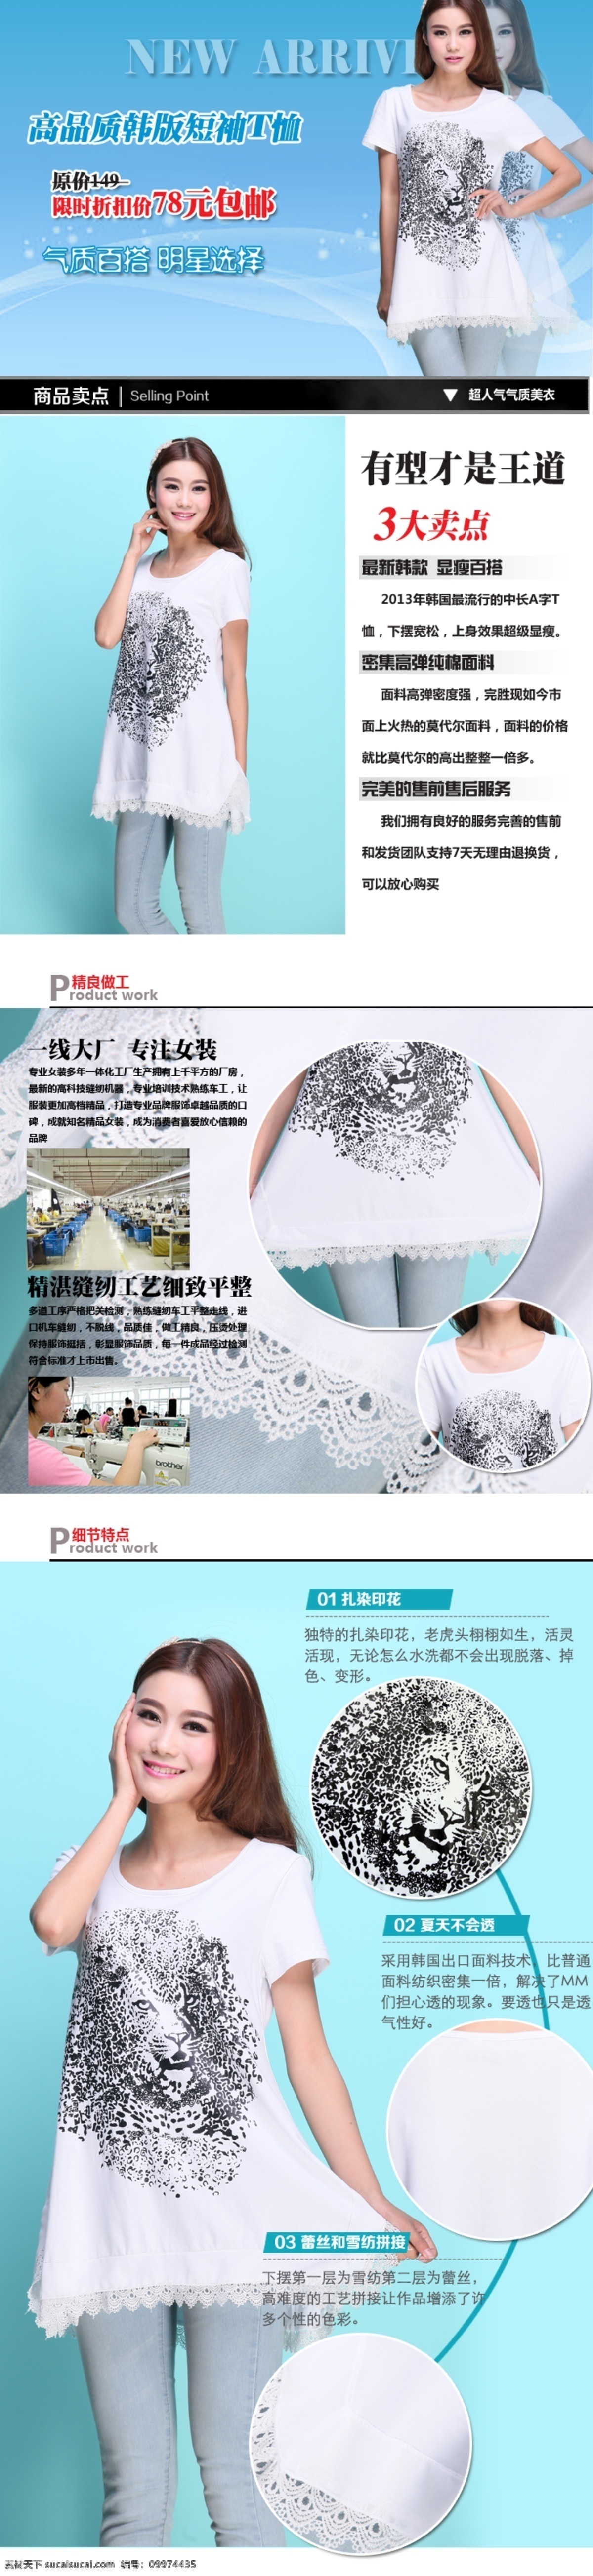 t恤 描述 女装 排版 网页模板 源文件 中文模板 长 款 t 恤 模板下载 长款